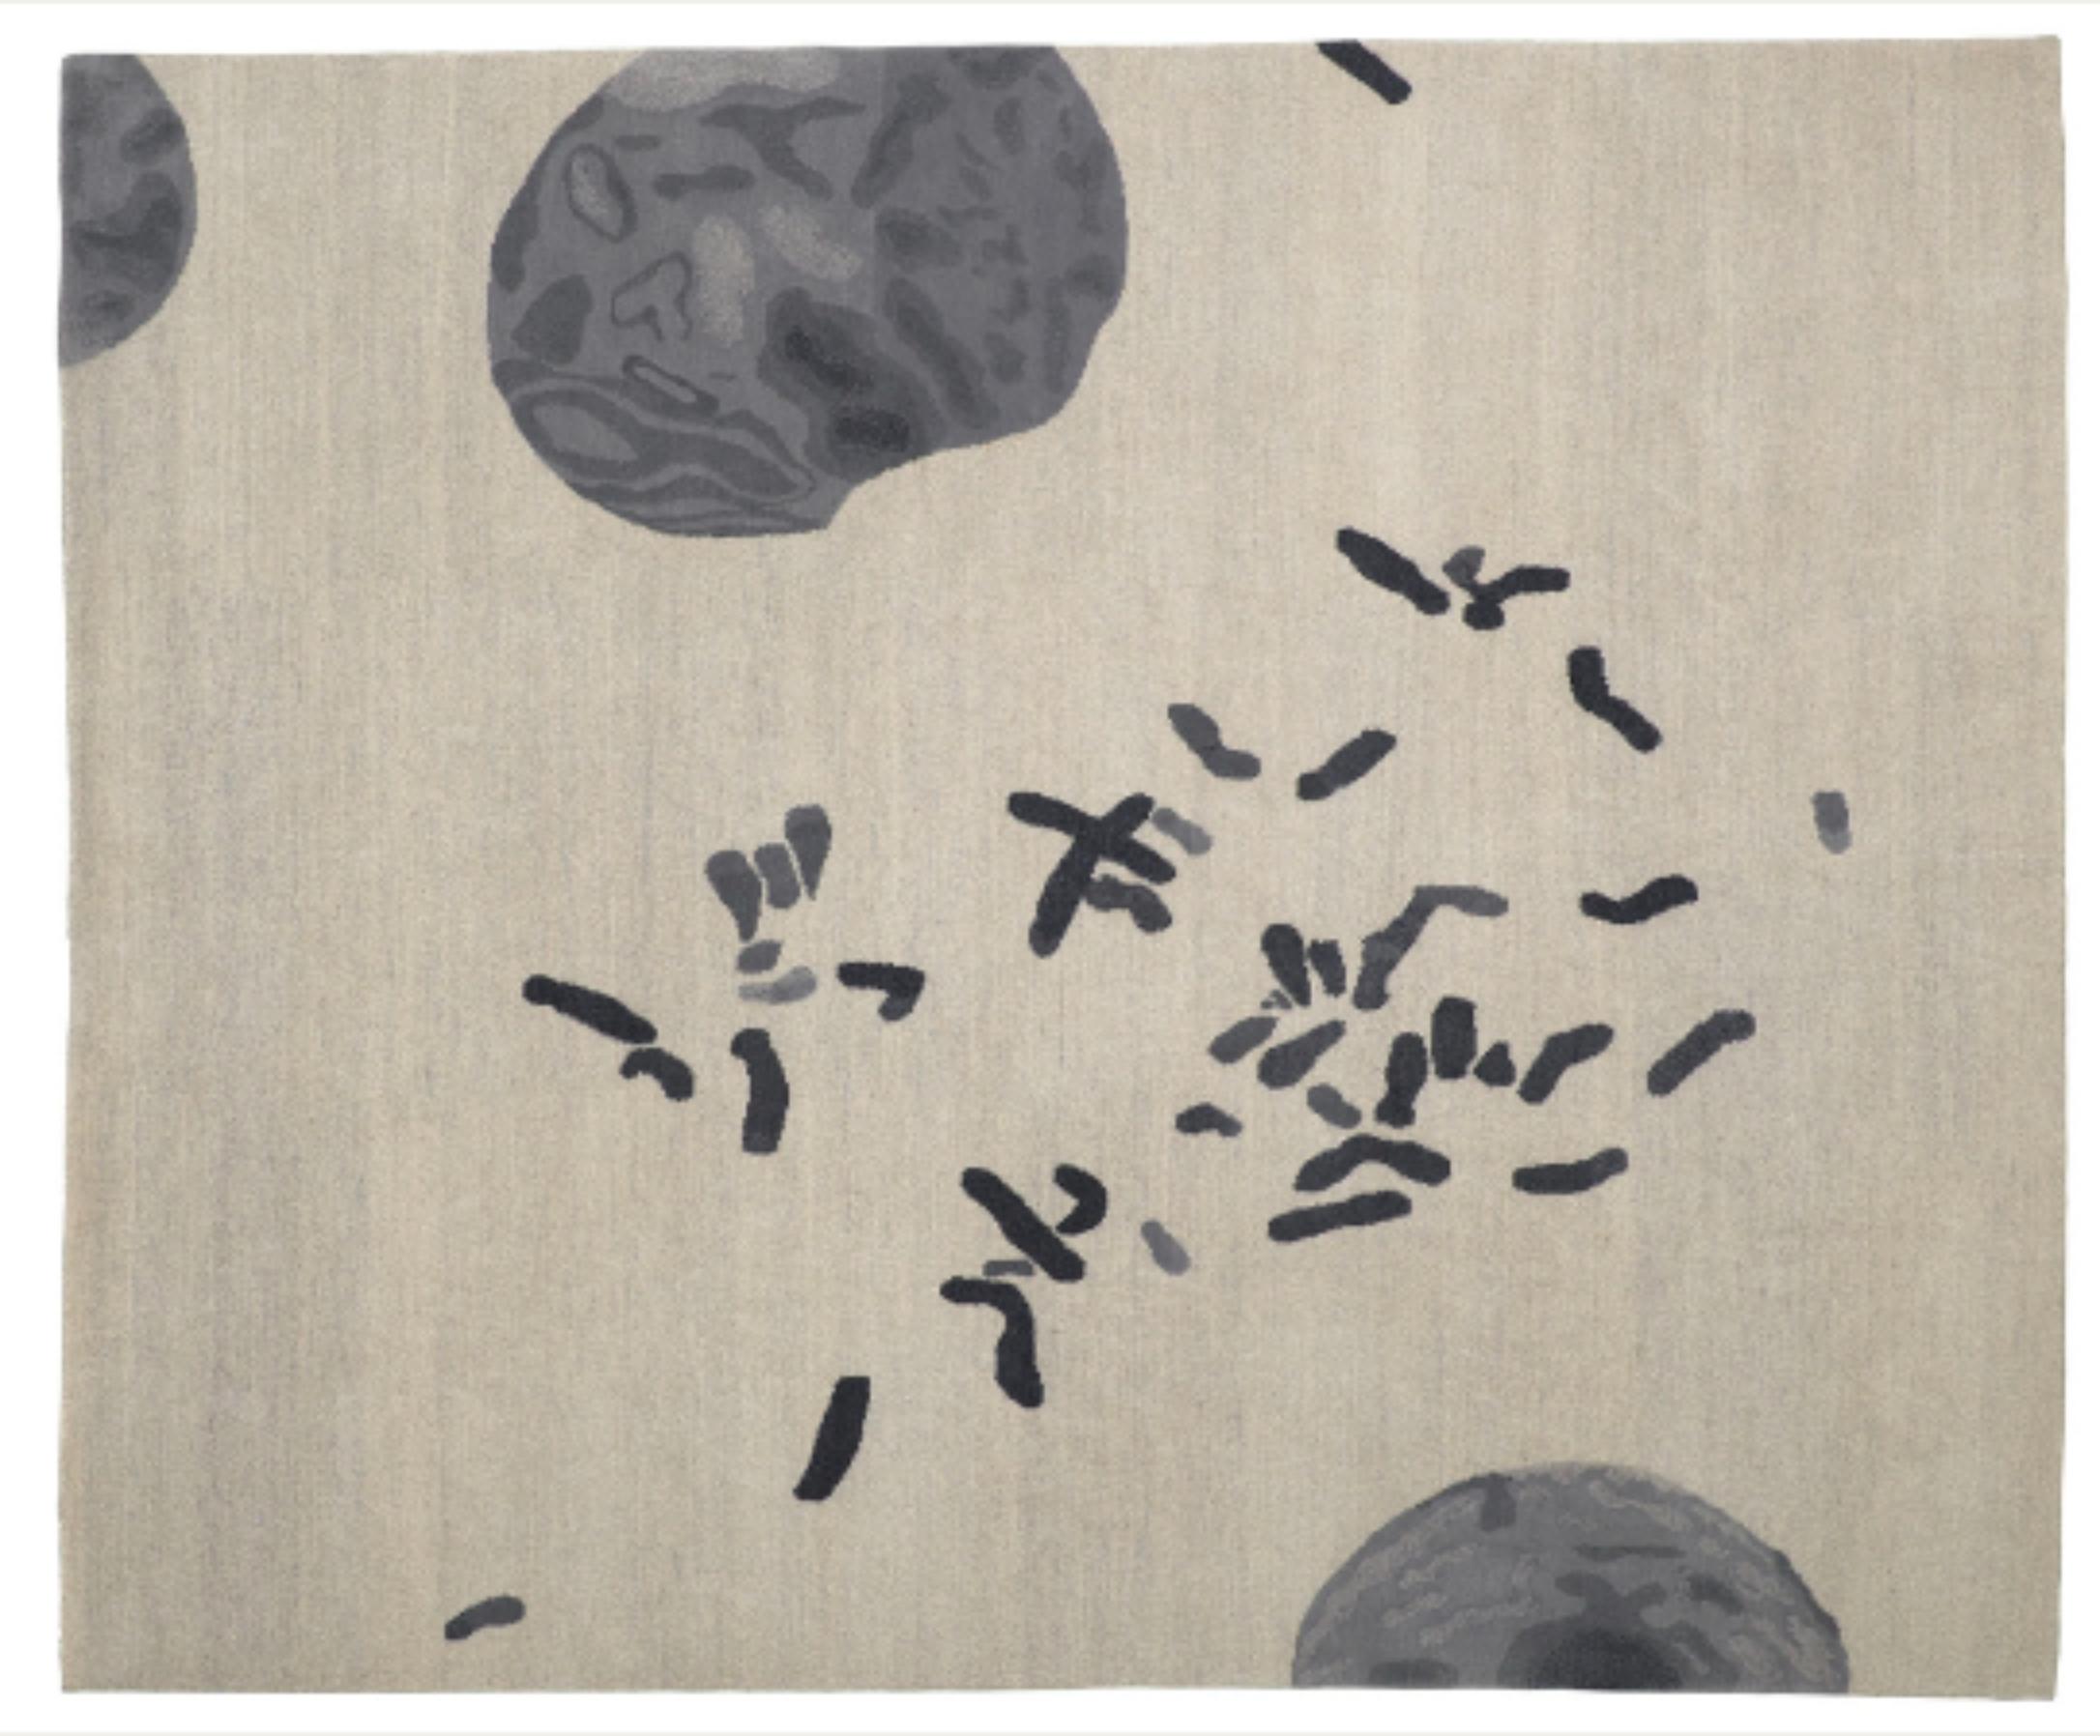 Chromosome CF P. 28D par Caturegli Formica
Dimensions : L 220 x L 180 cm
Matériaux : Laine

Les tapis en tant qu'informations approfondies

Les tapis sont des articles très courants. Mais on n'a jamais vraiment su si leurs décorations, tissées et